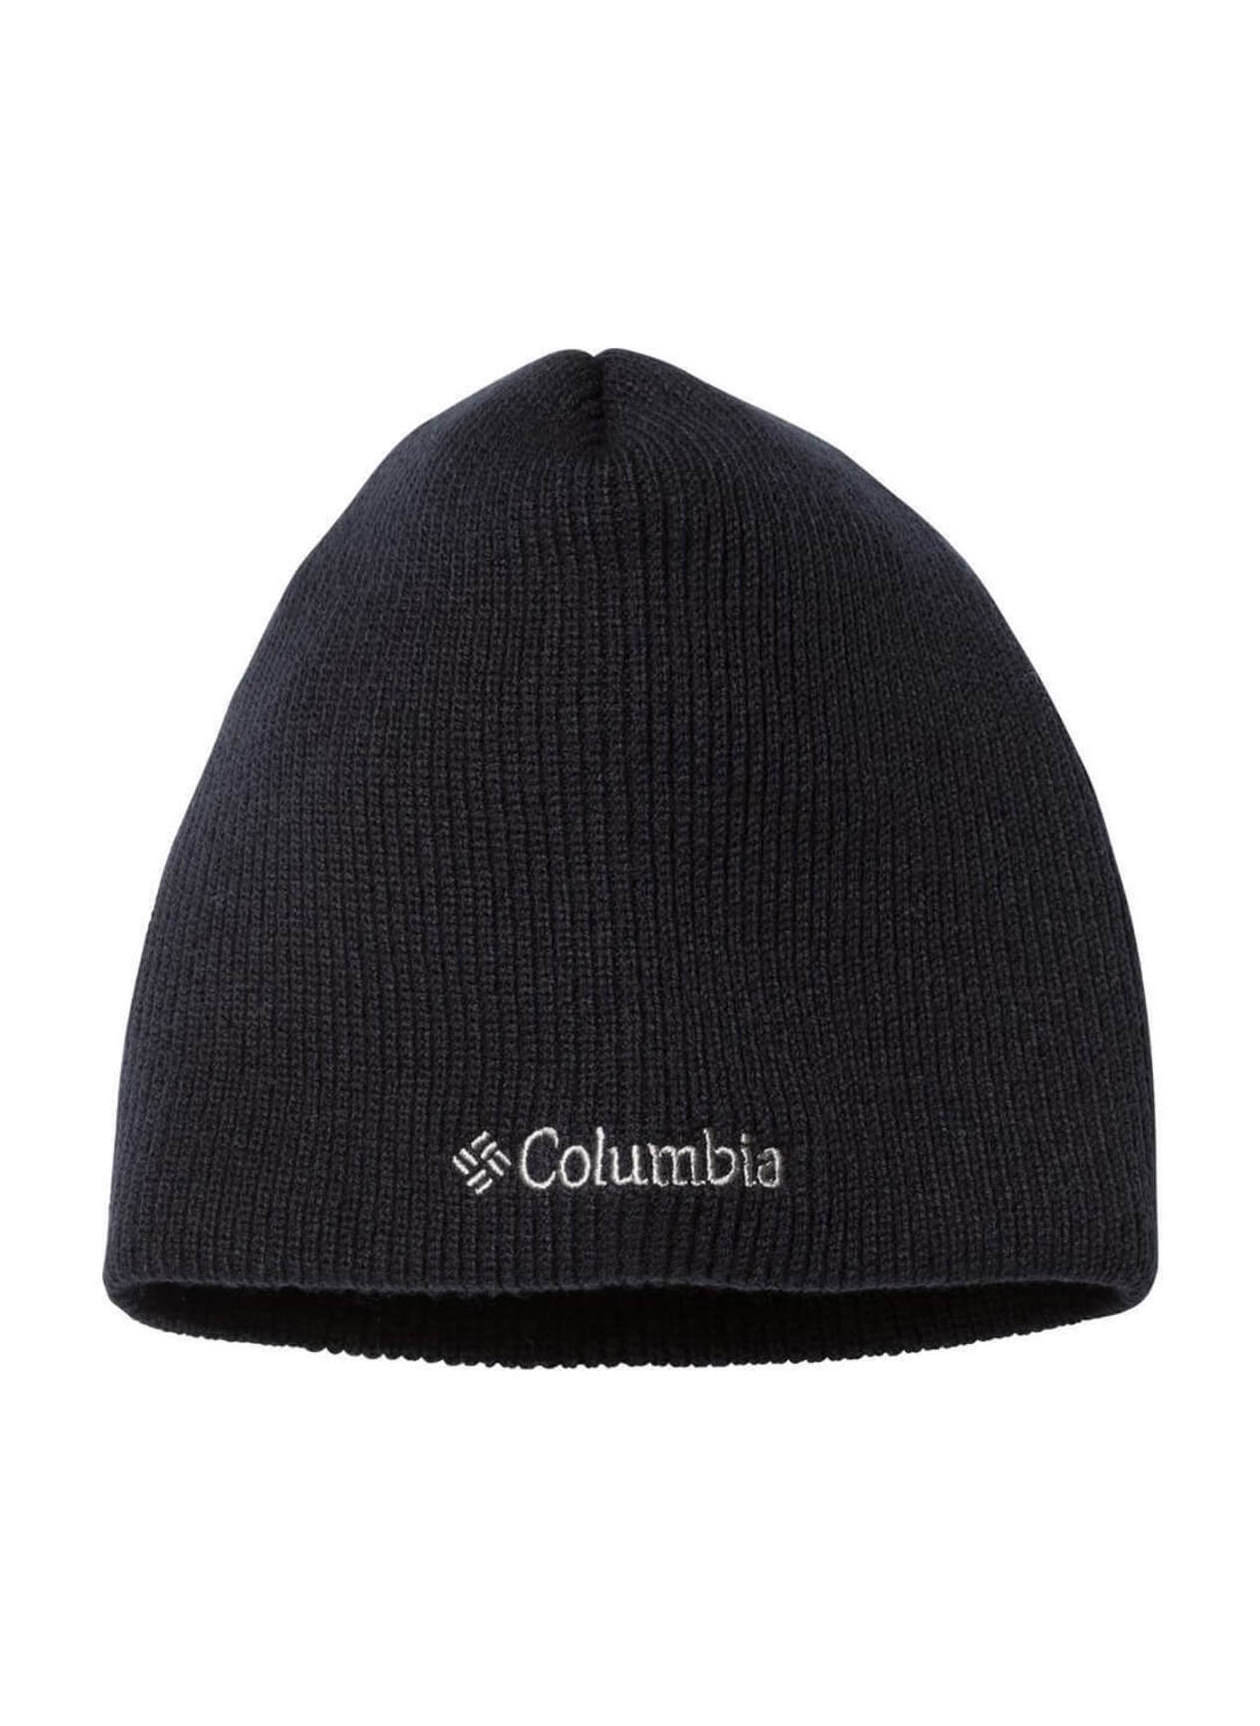 Columbia WATCH UNISEX - Bonnet - black/noir 